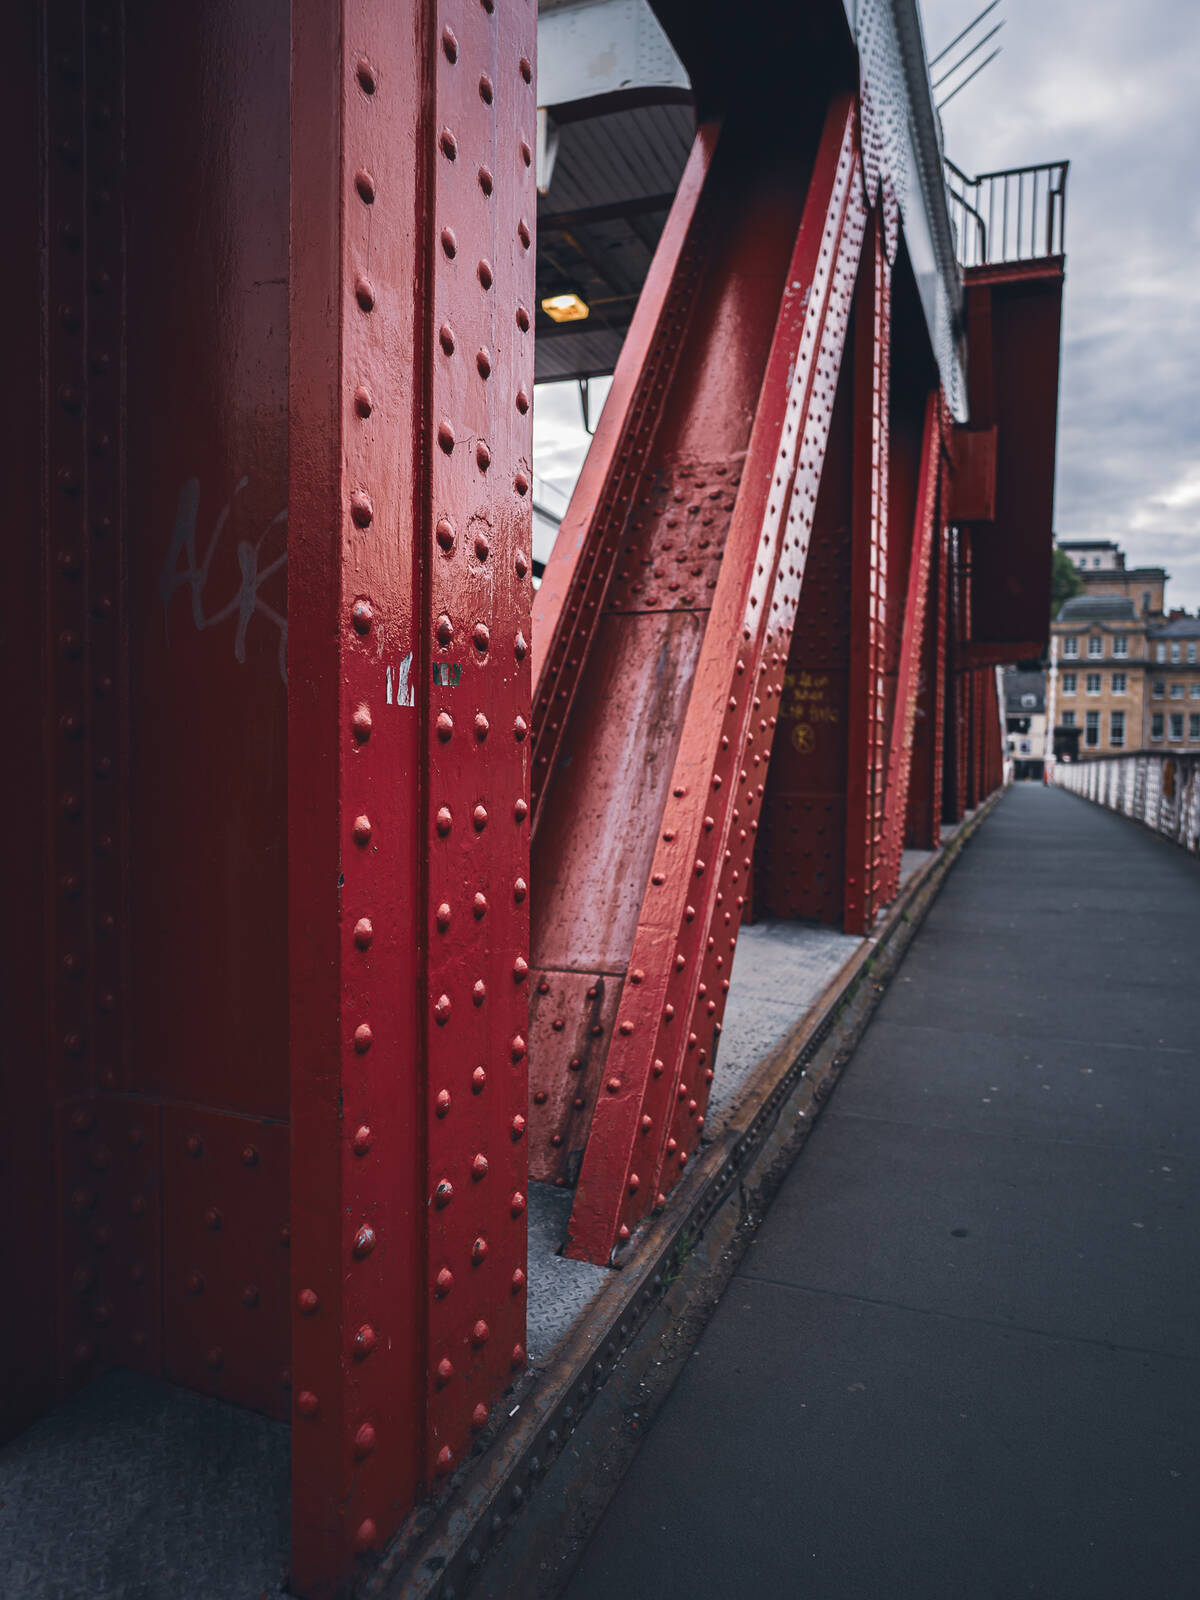 Image of River Tyne Swing Bridge by James Billings.